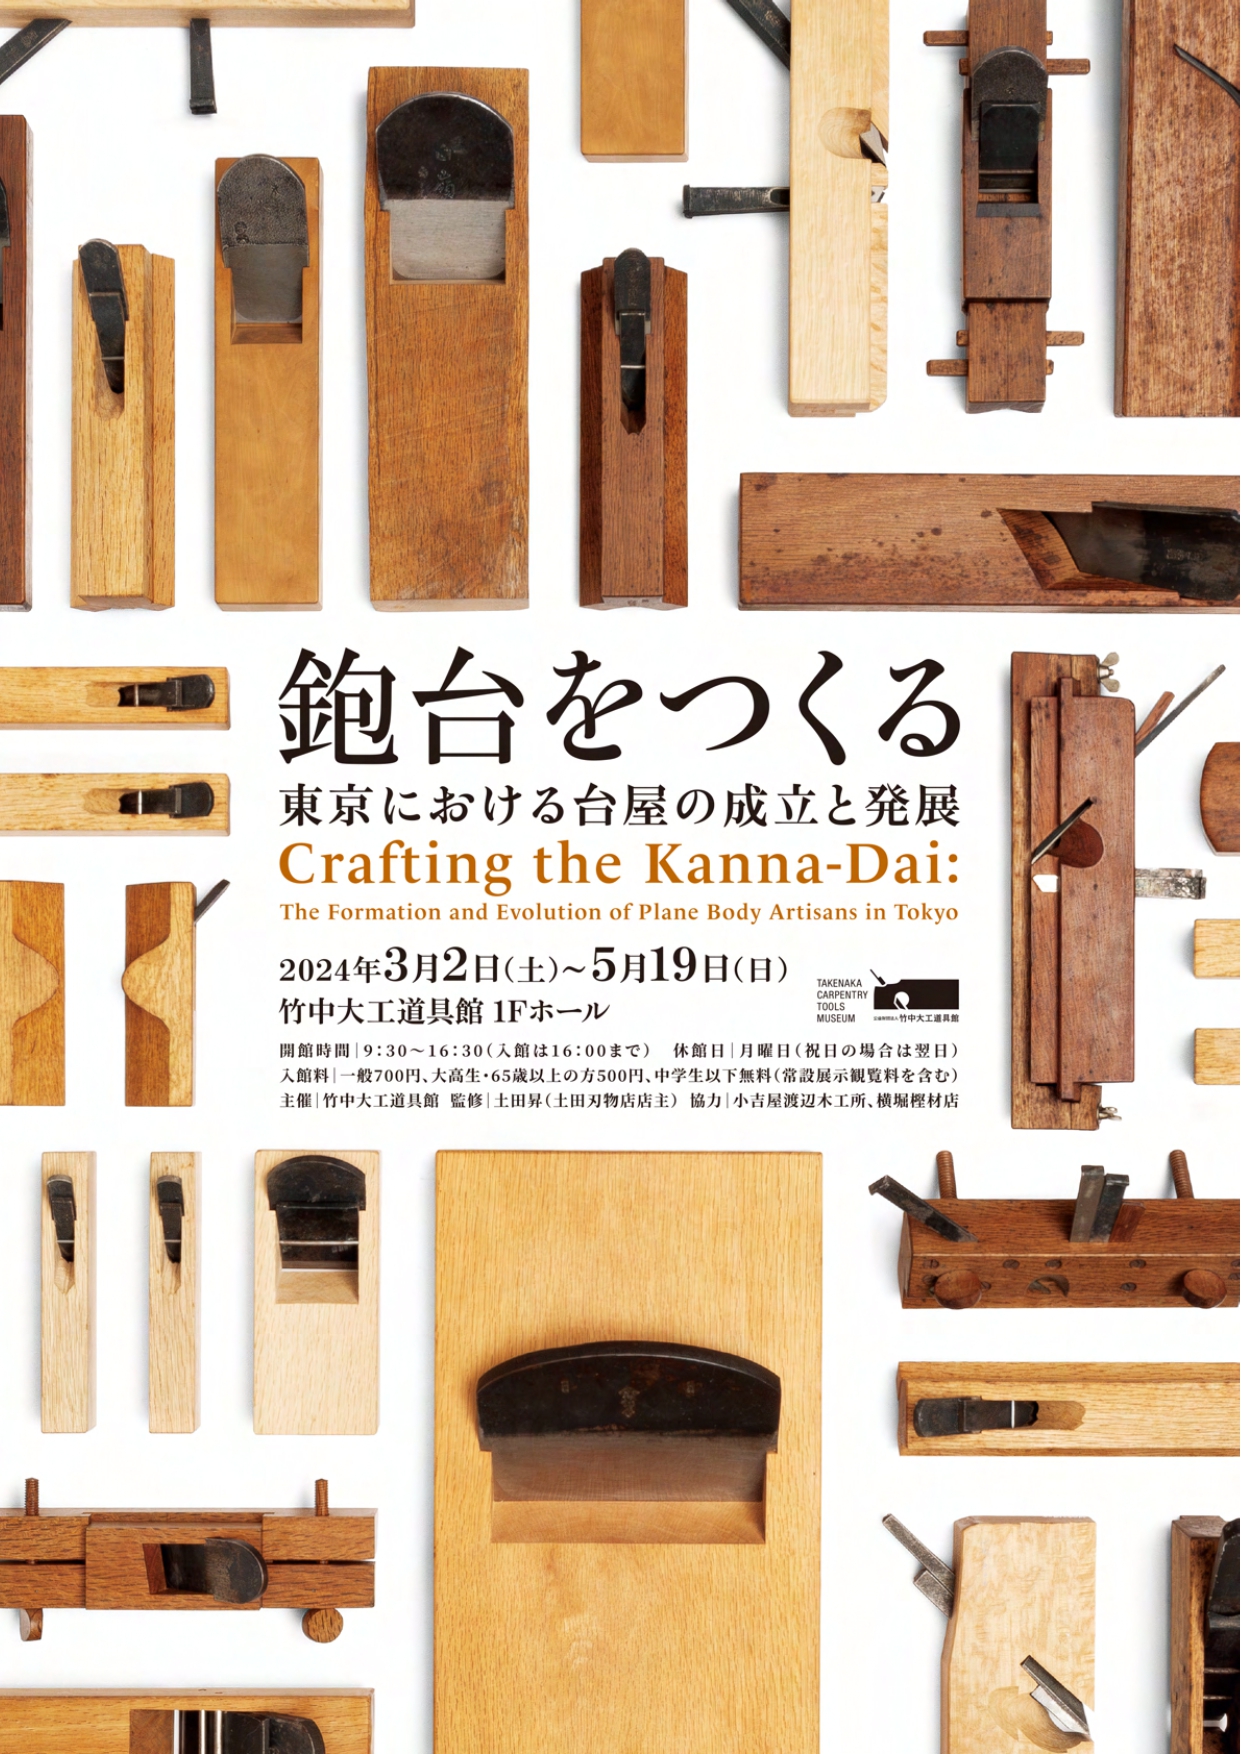 「鉋台をつくる ―東京における台屋の成立と発展」 （竹中大工道具館） ｜Tokyo Art Beat